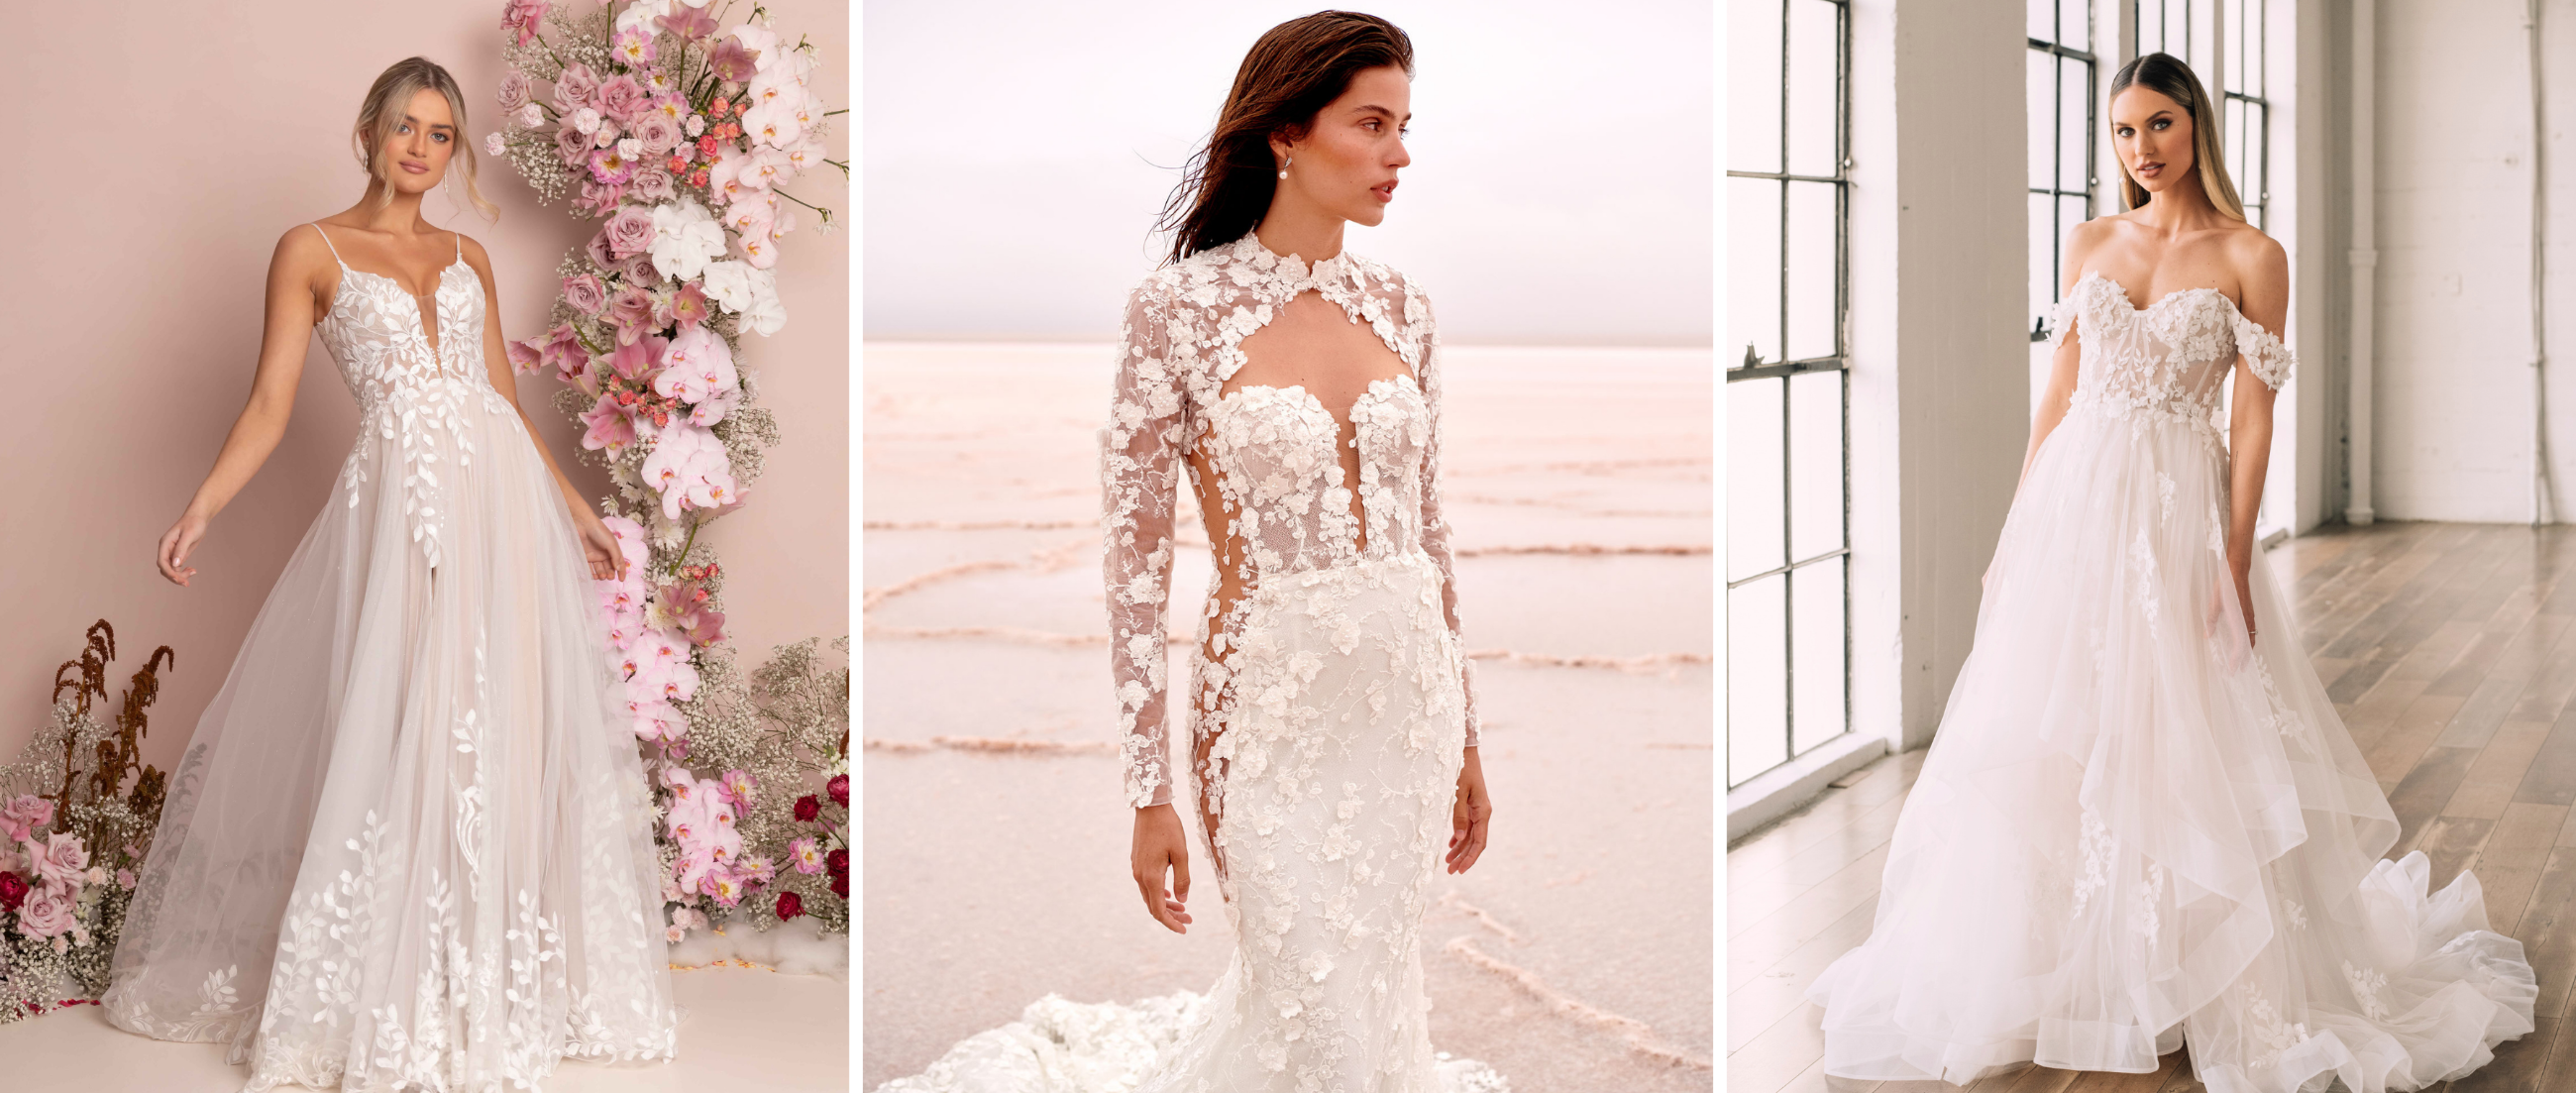 Romantic Lace Wedding Dresses Mobile Image